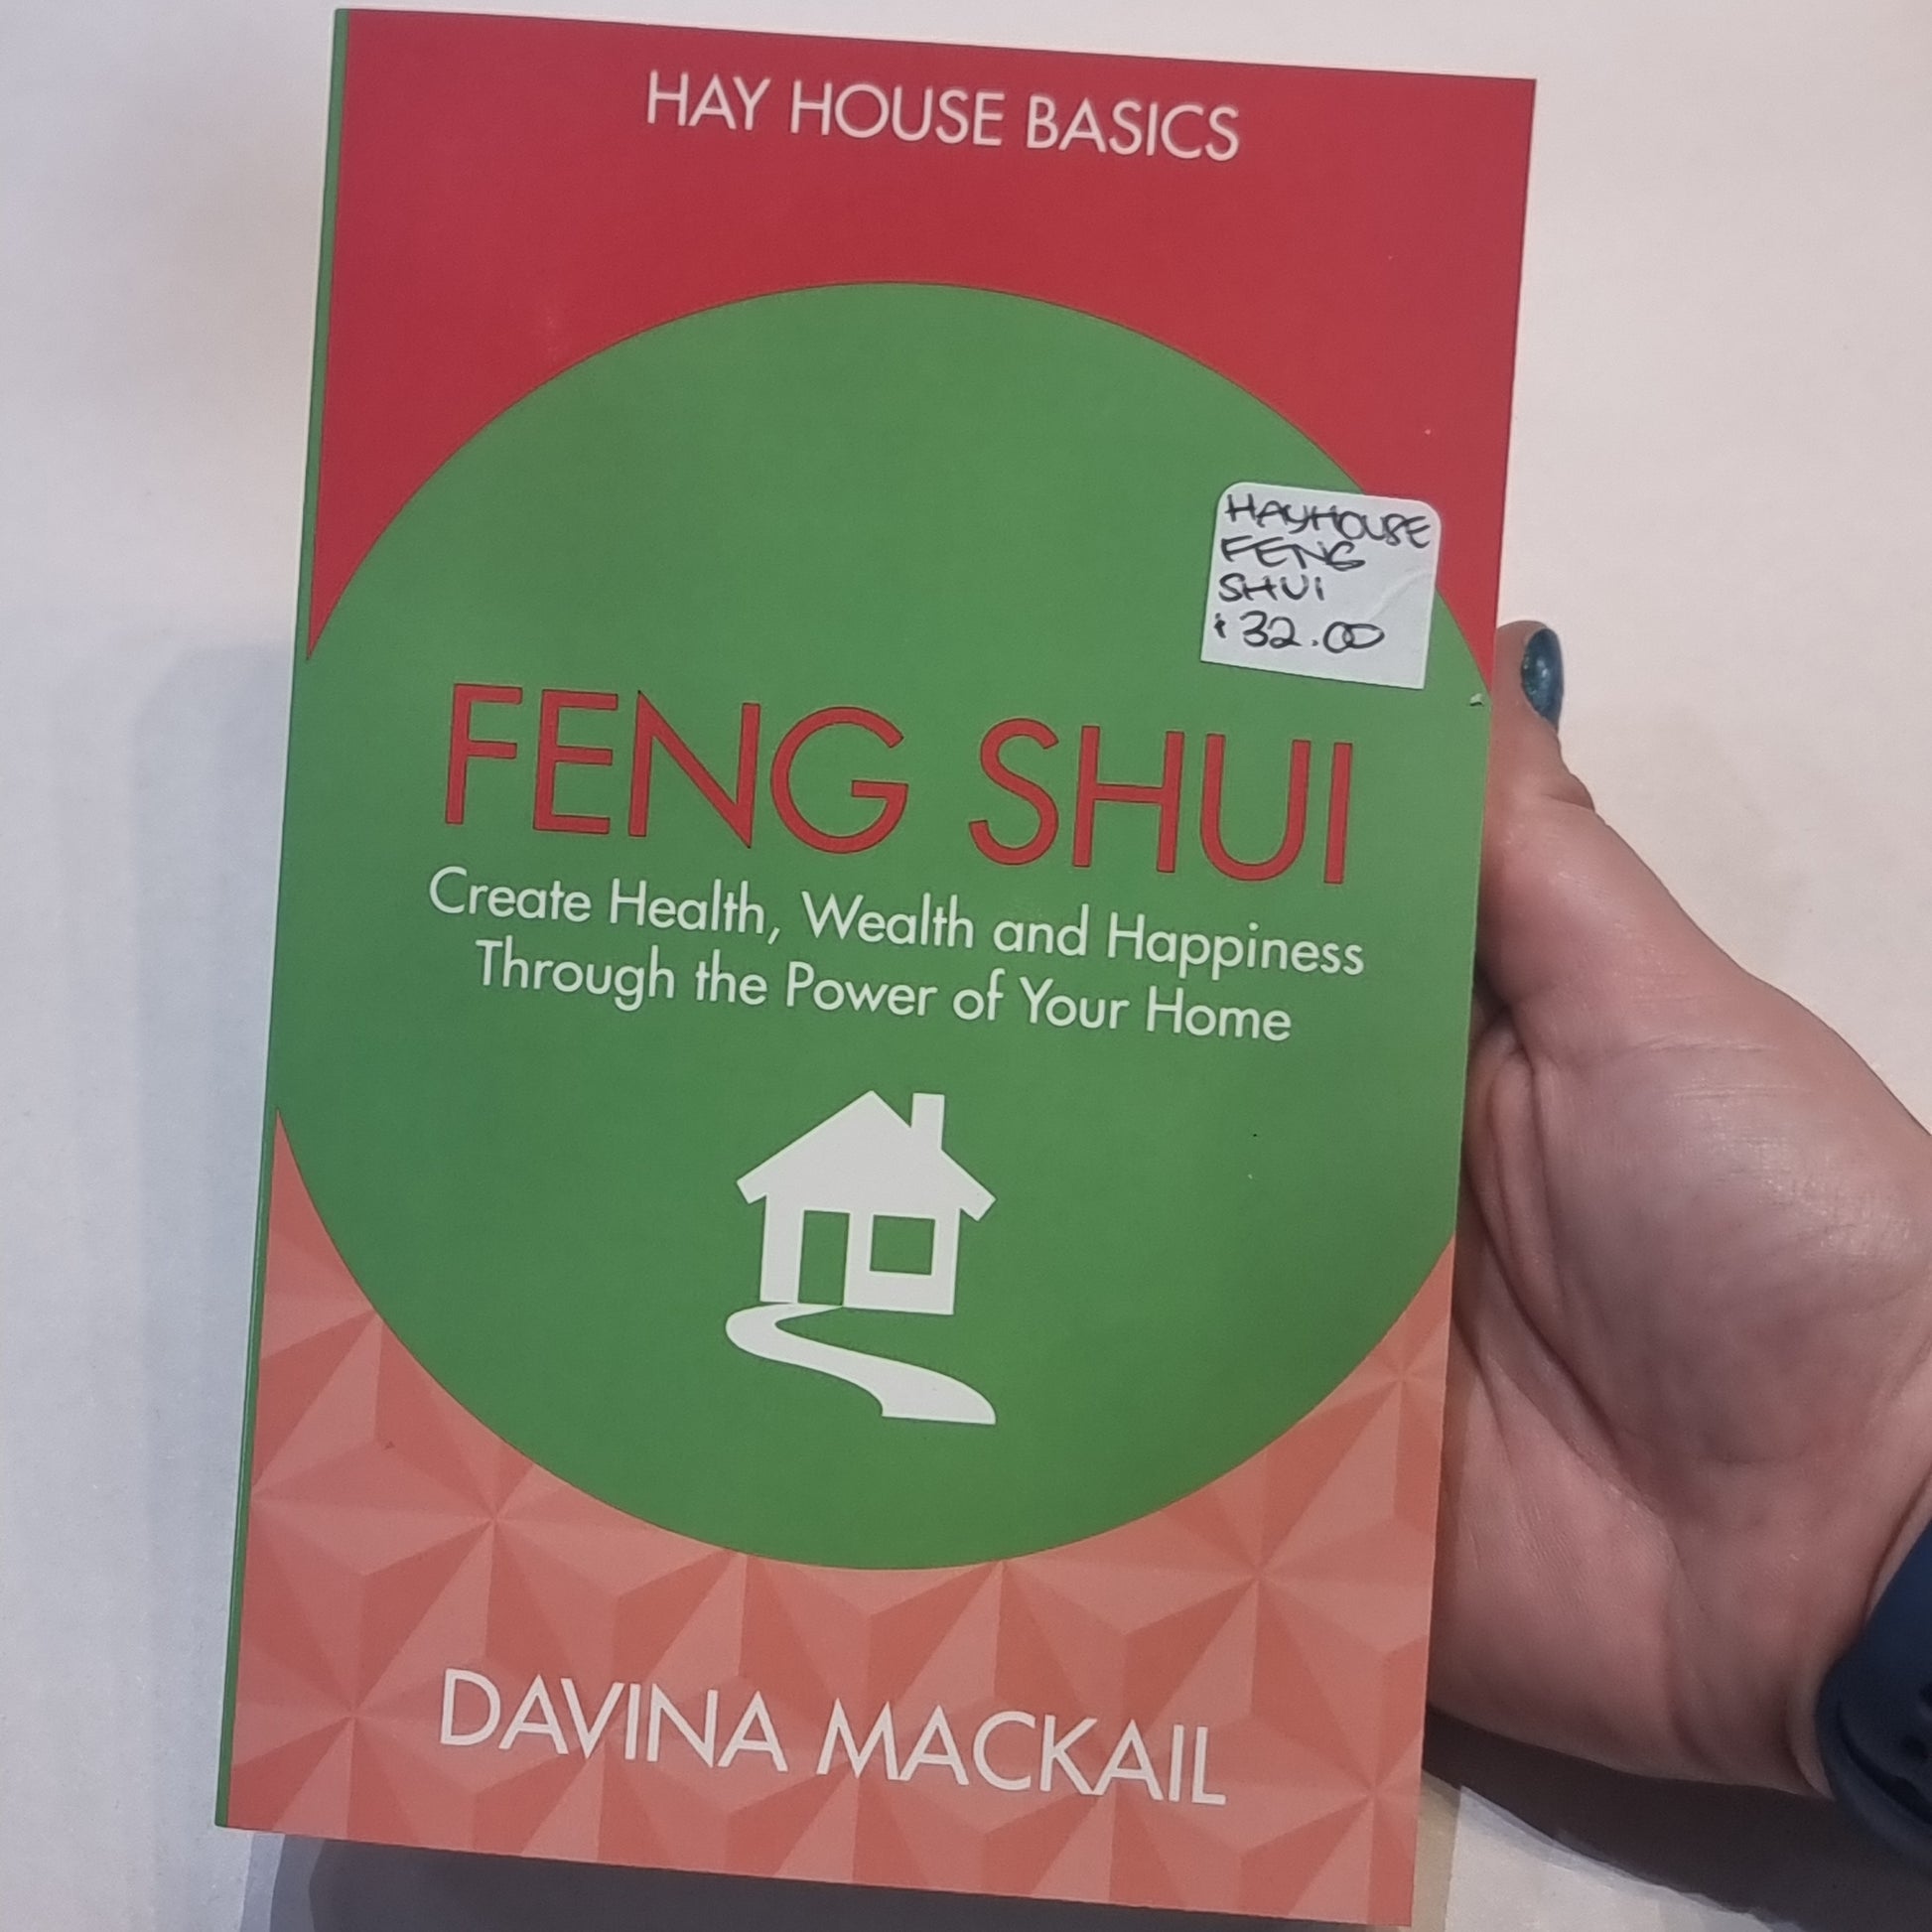 Hay house basics - feng shui - Rivendell Shop